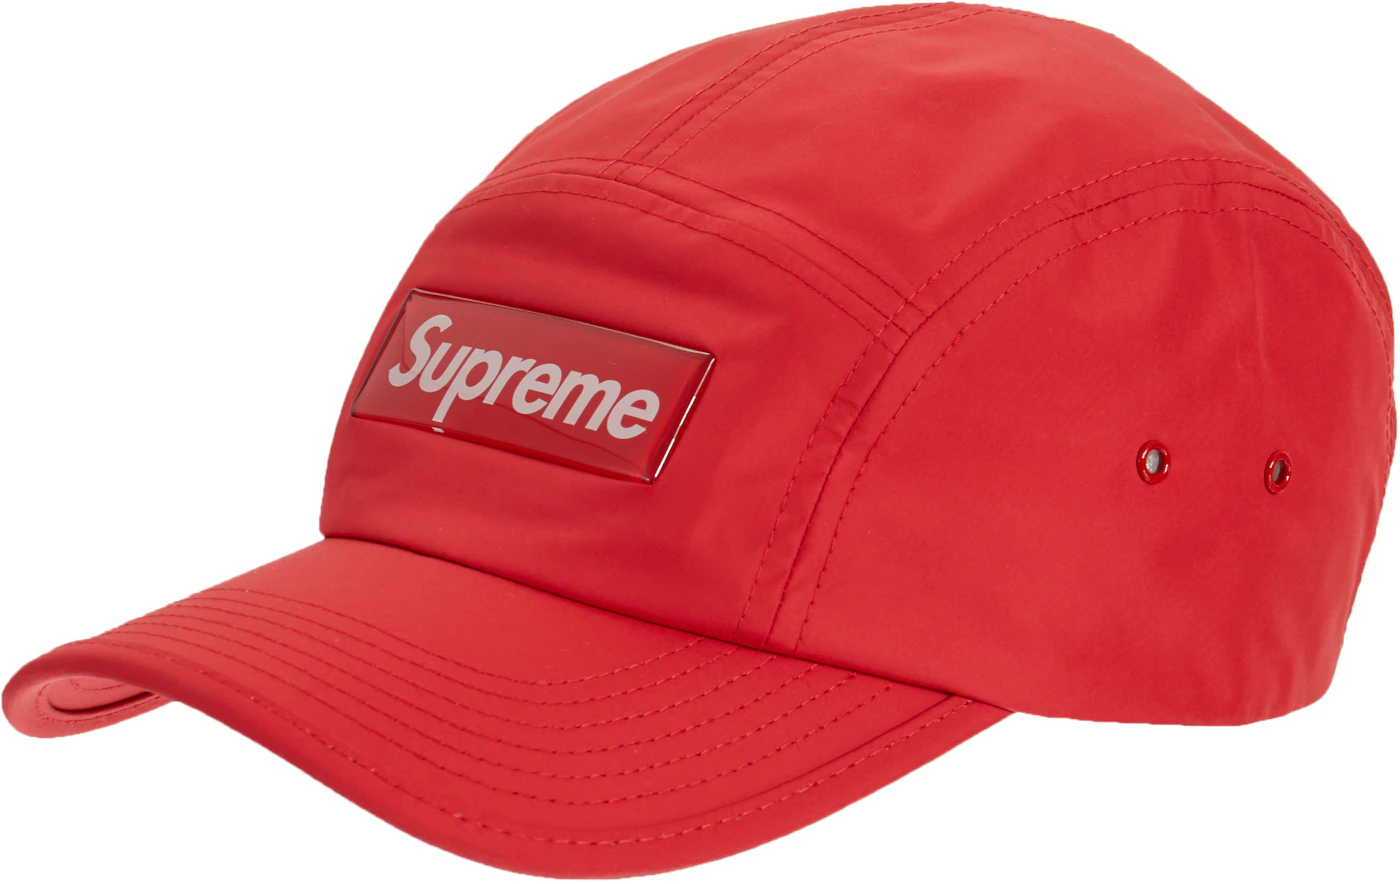 Supreme Red Checker Camp Cap